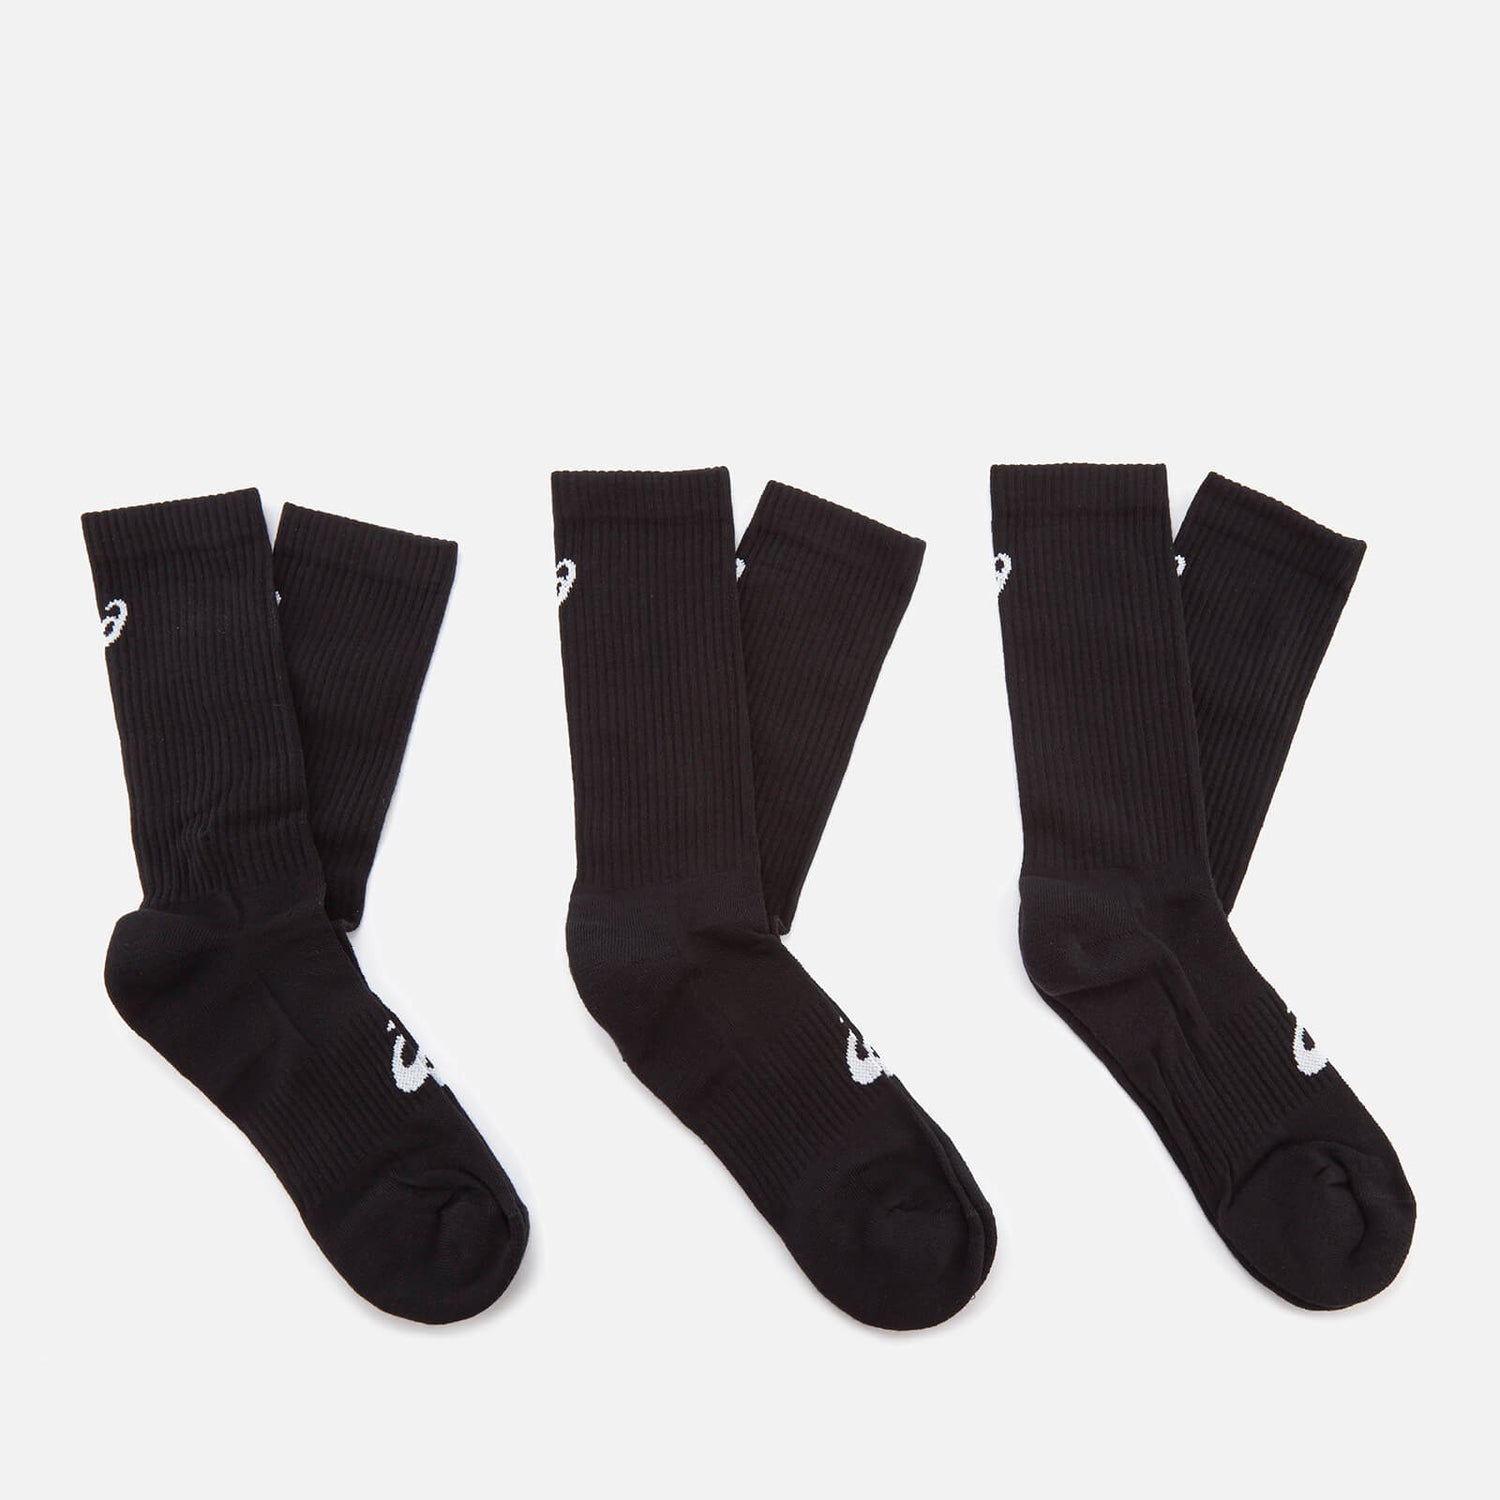 Men's 6 Pack Crew Socks - Performance Black |